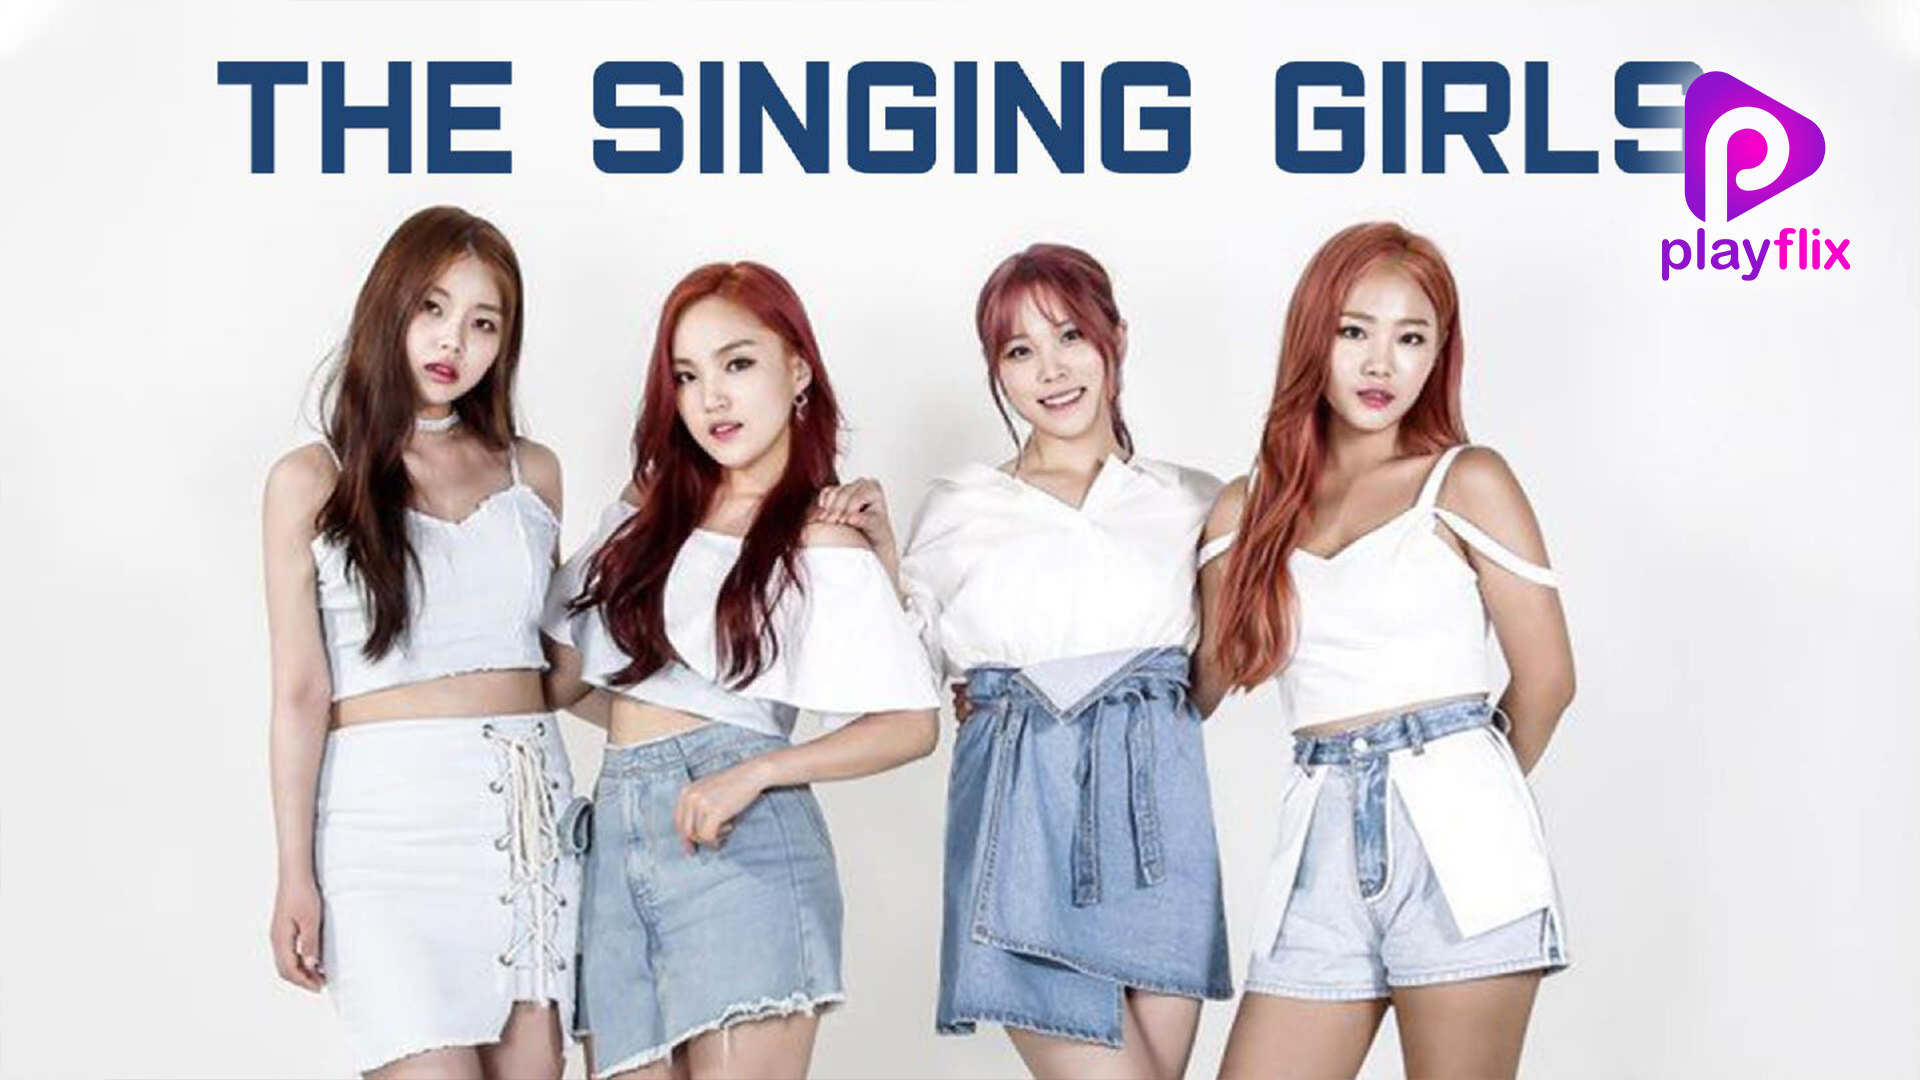 The Singing Girls